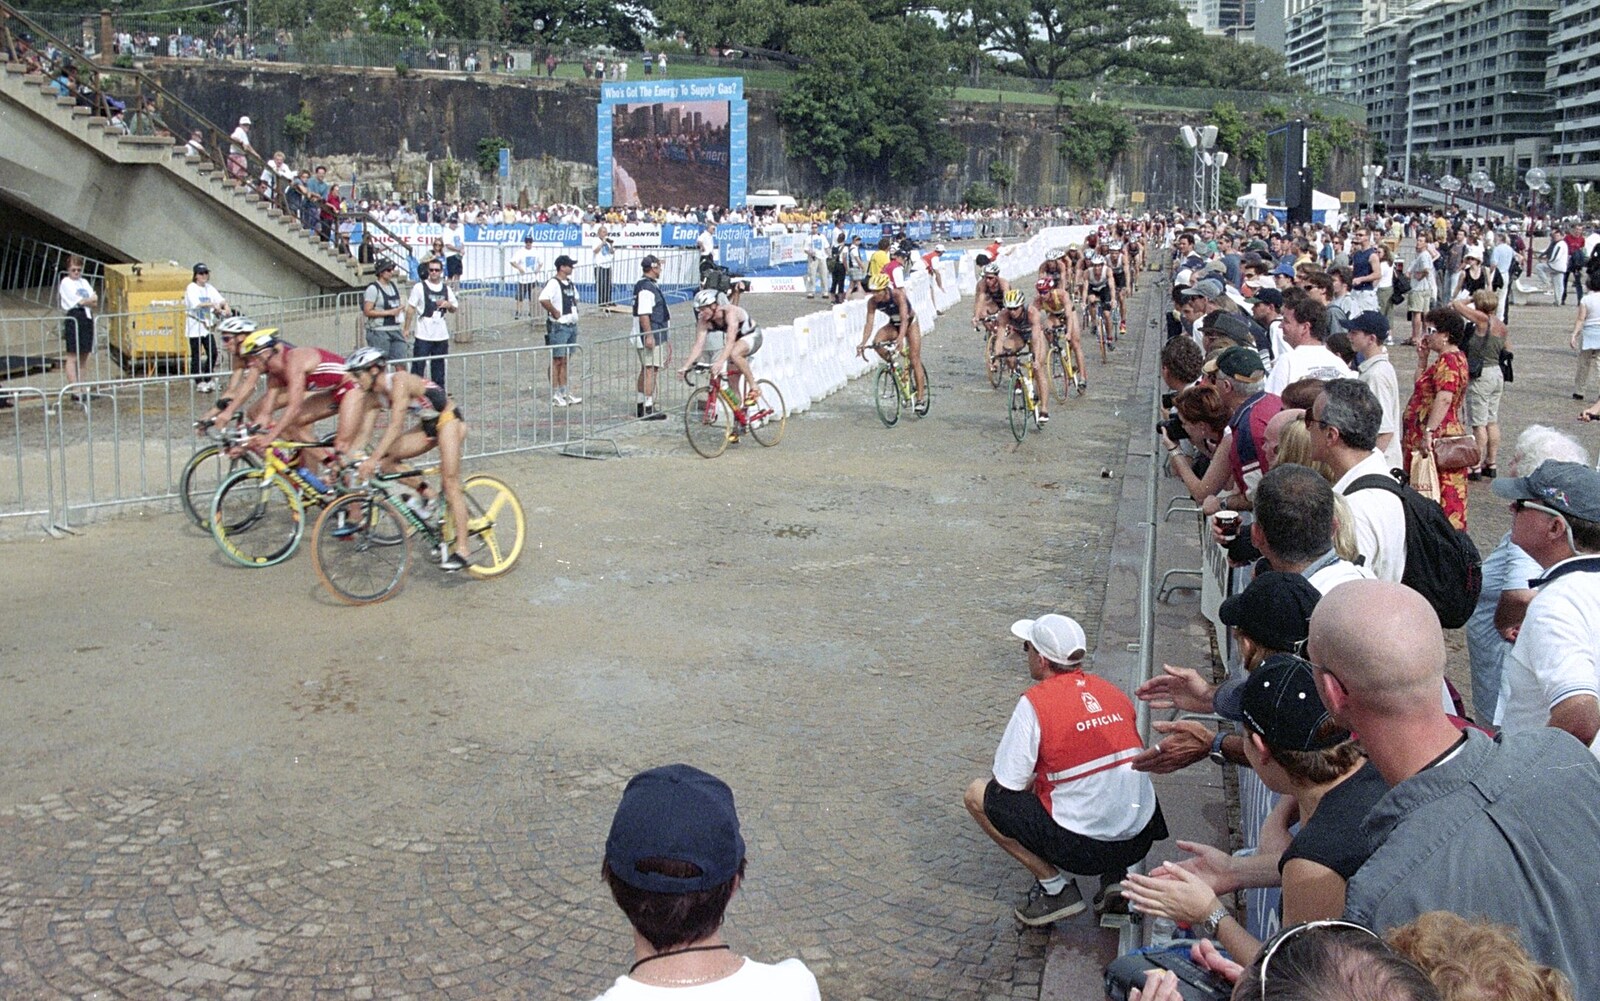 A mass of cyclists from Sydney Triathlon, Sydney, Australia - 16th April 2000